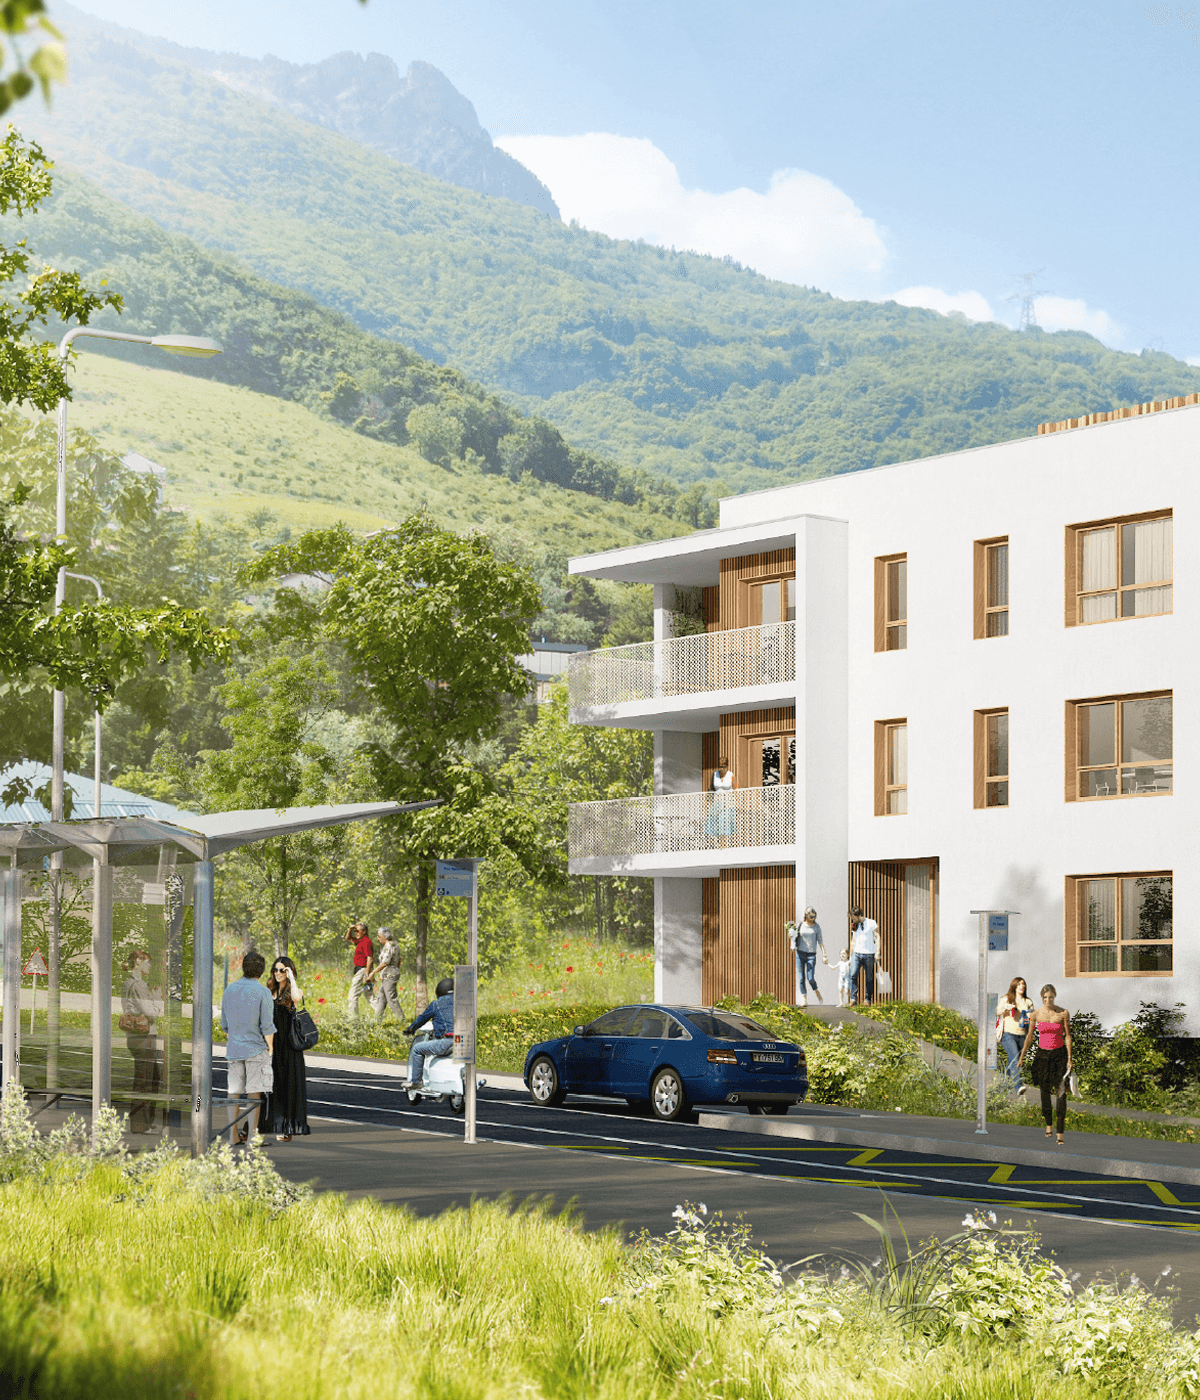 Identité visuelle du Val vert, programme immobilier neuf, créée pour Grenoble Habitat par Caramel & Paprika - Extrait de la vue en 3D du projet (Perspective 3D © Basilico Design)